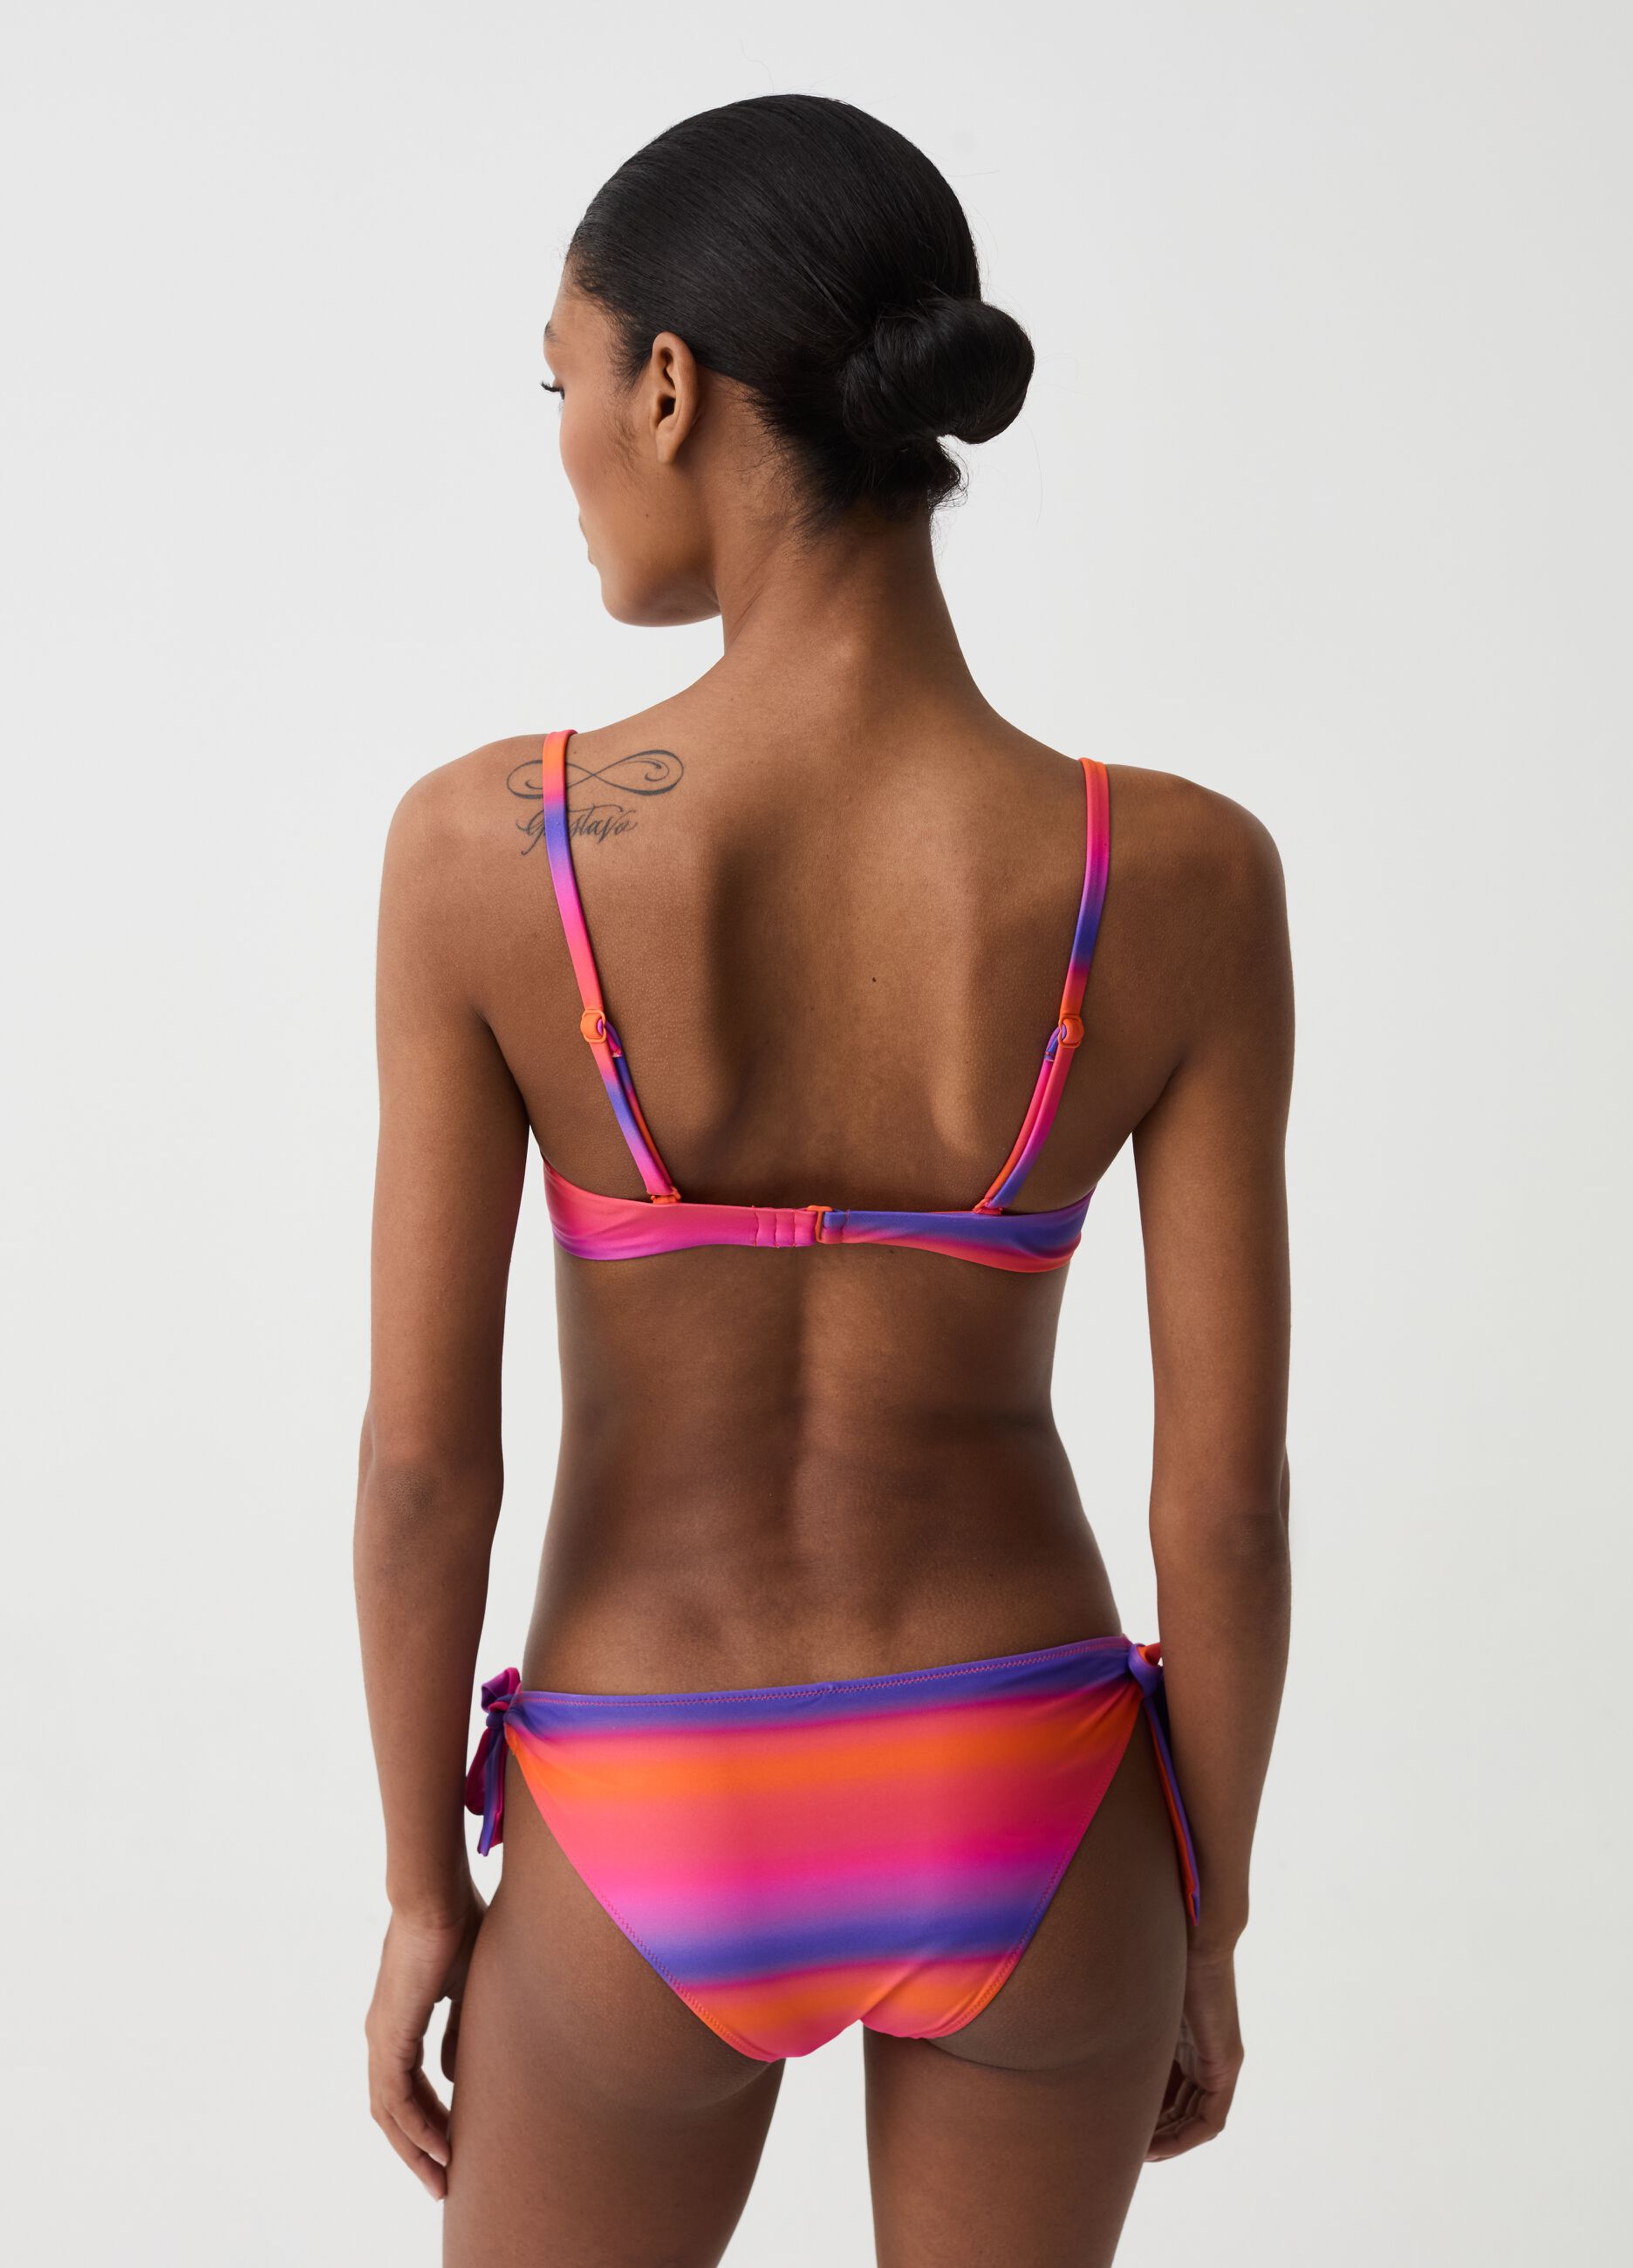 Bralette bikini top with faded stripe pattern